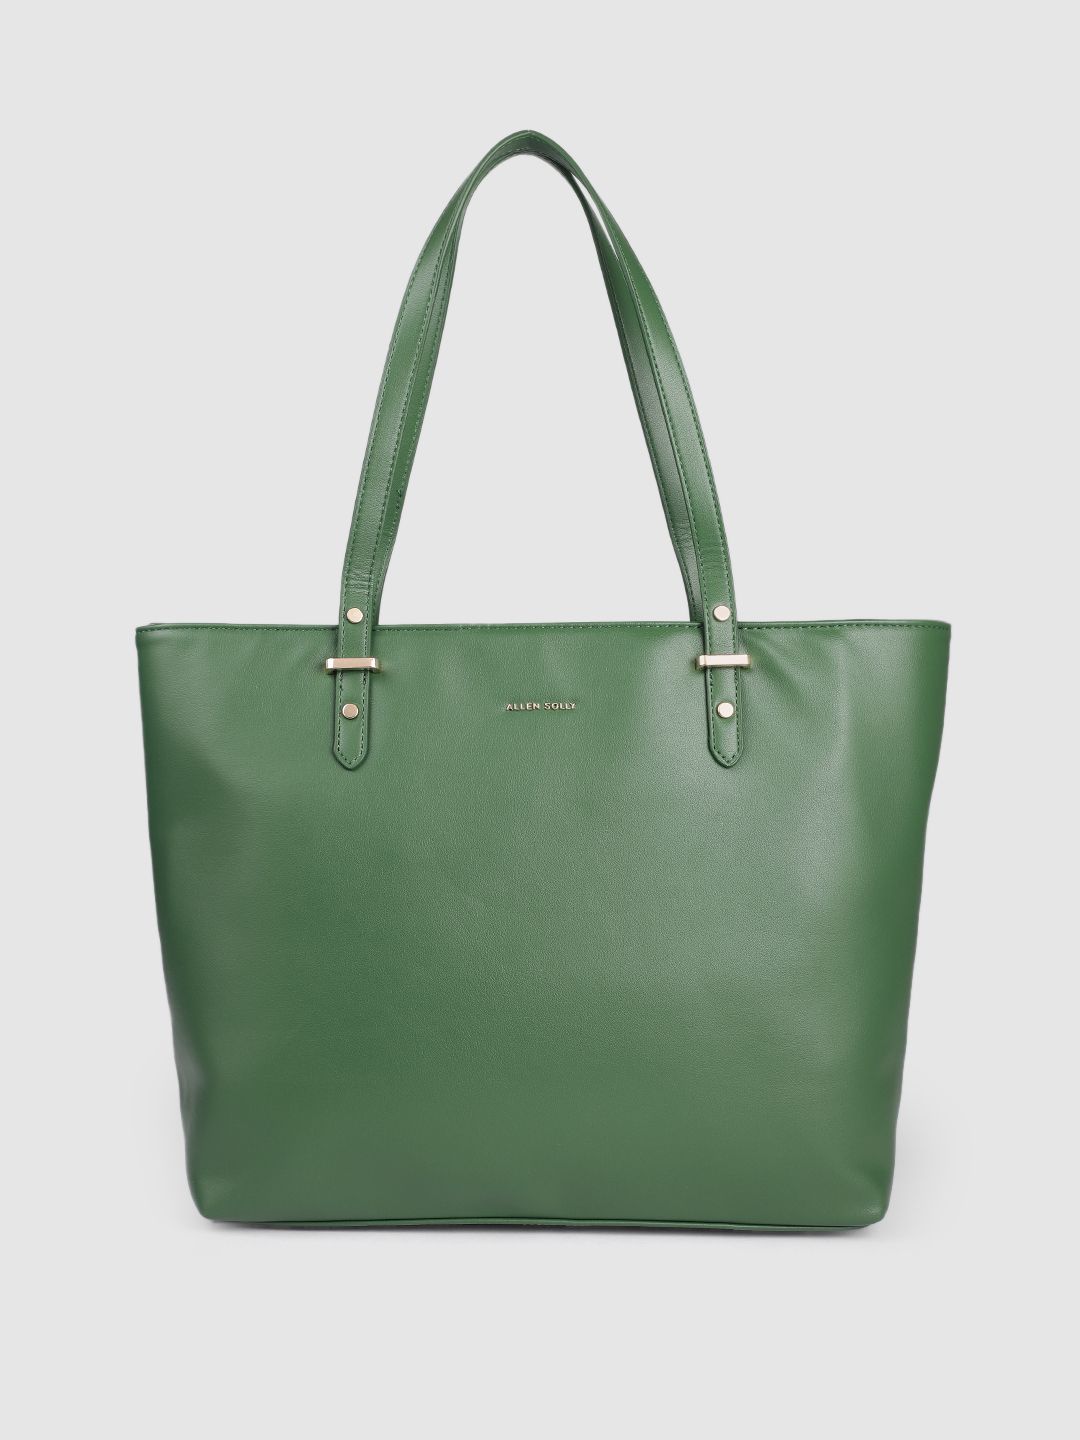 Allen Solly Women Green Shoulder Bag Price in India